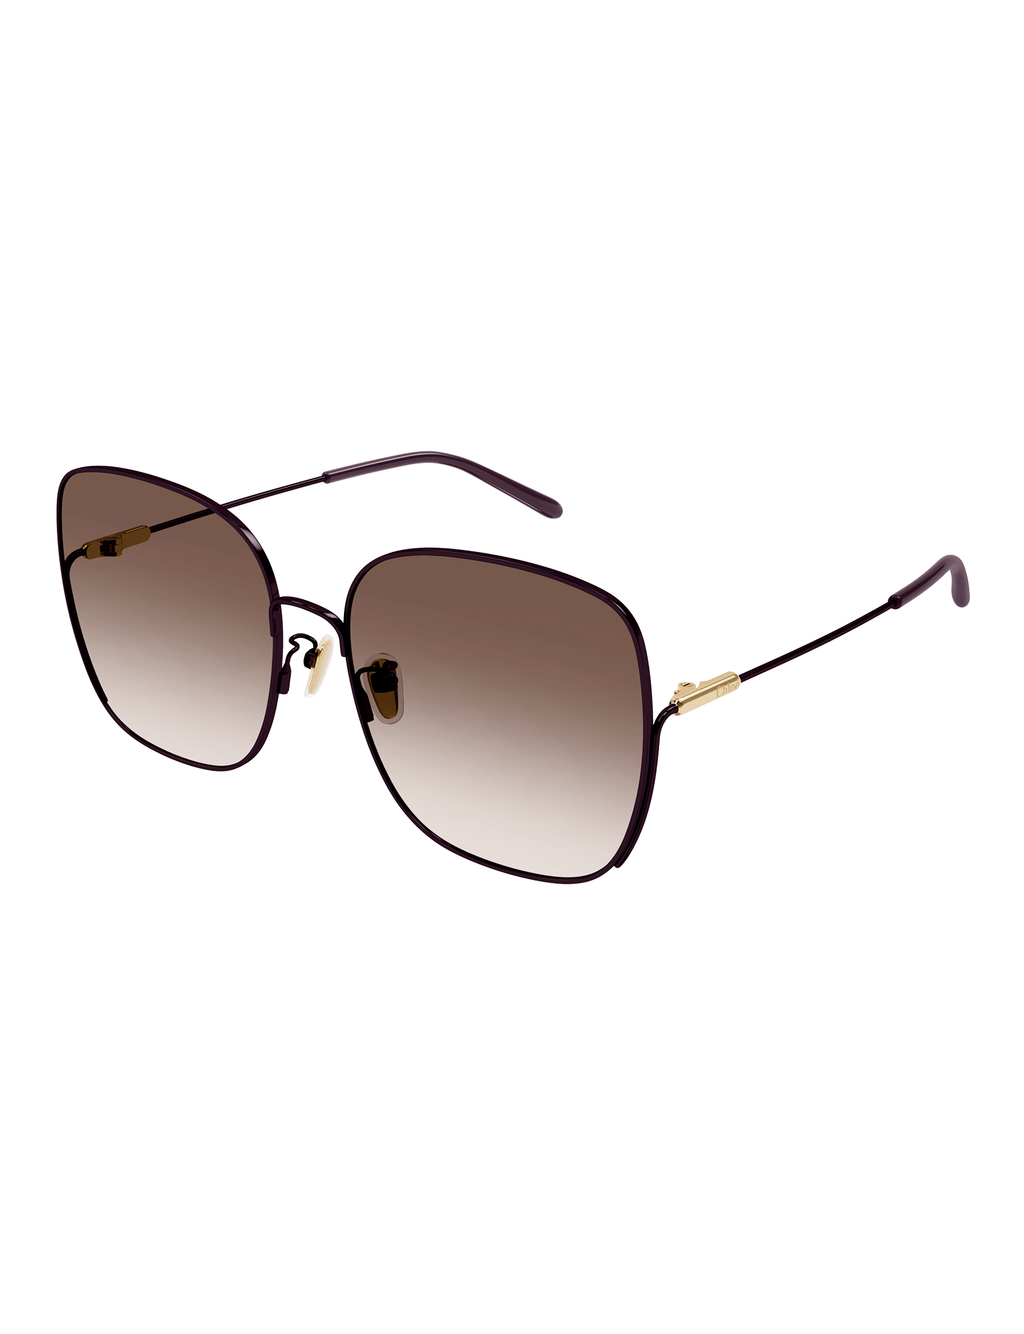 Square Metal Sunglasses, Burgundy/Brown